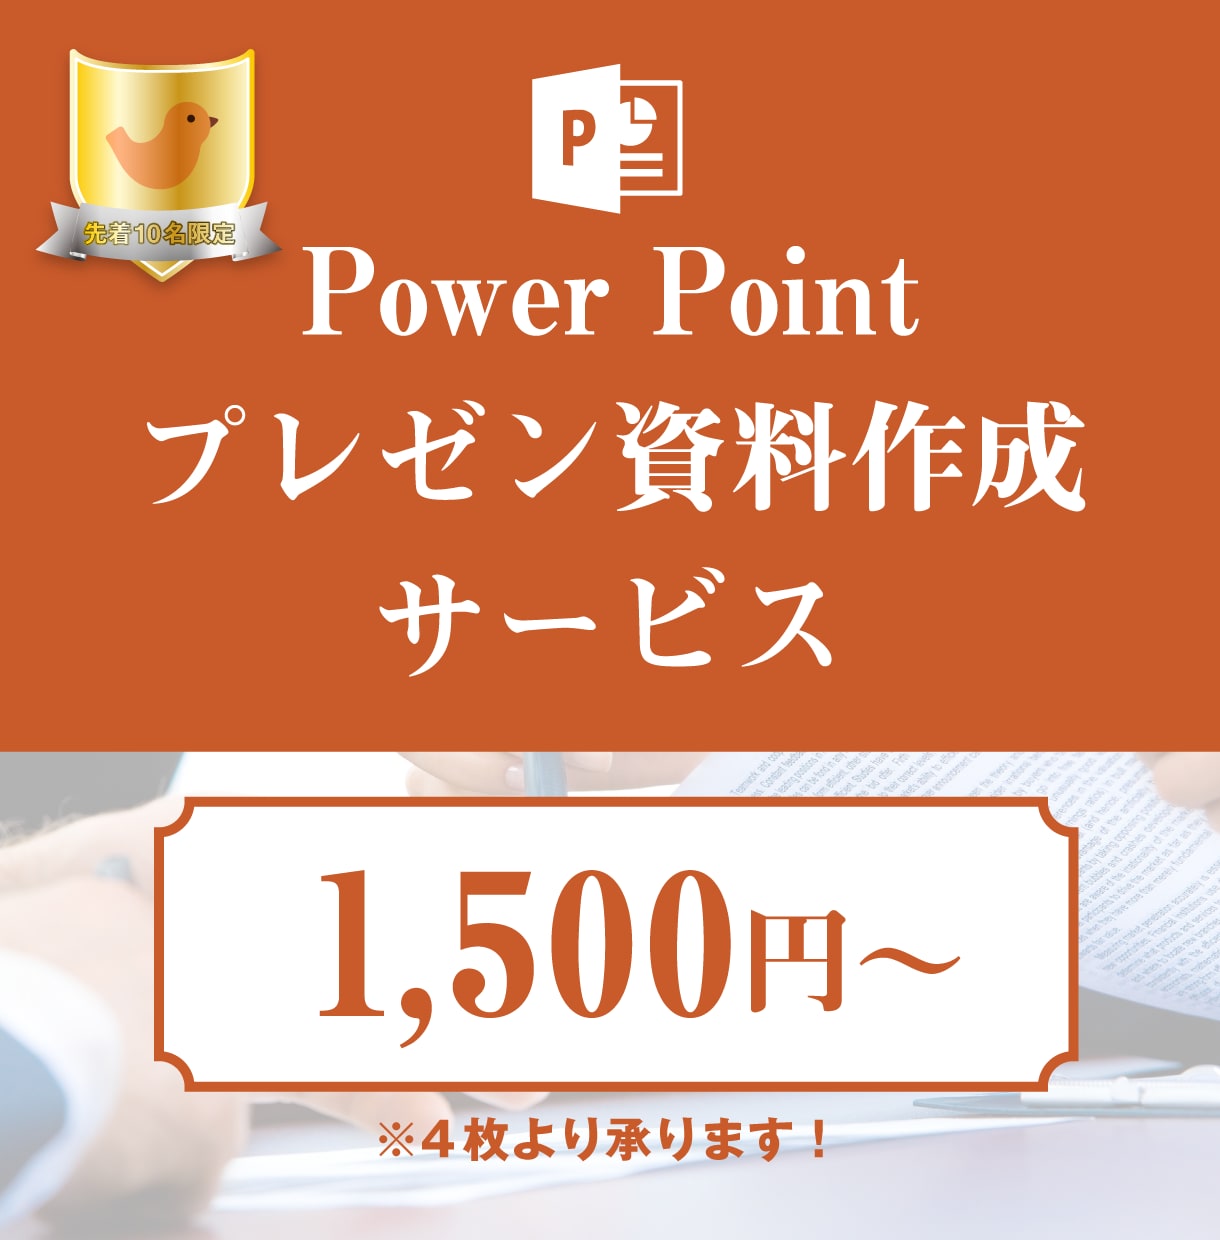 伝わる＊パワーポイントの資料作成いたします Power Pointでパワーのあるプレゼンをしましょう！ イメージ1